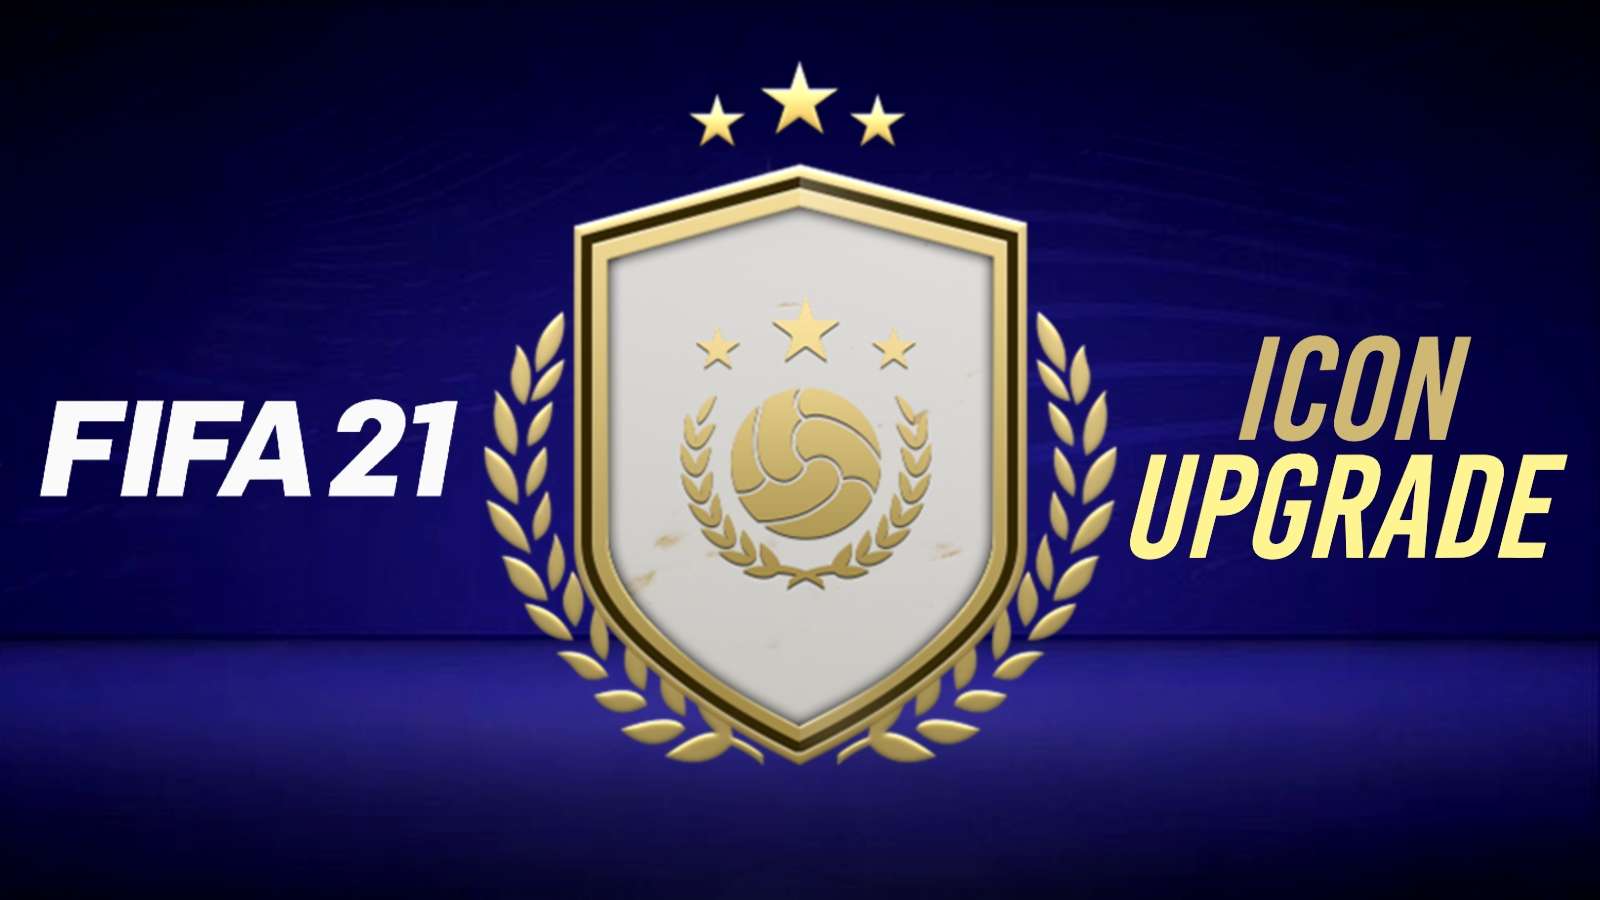 FIFA 21 mid prime icon upgrade SBC